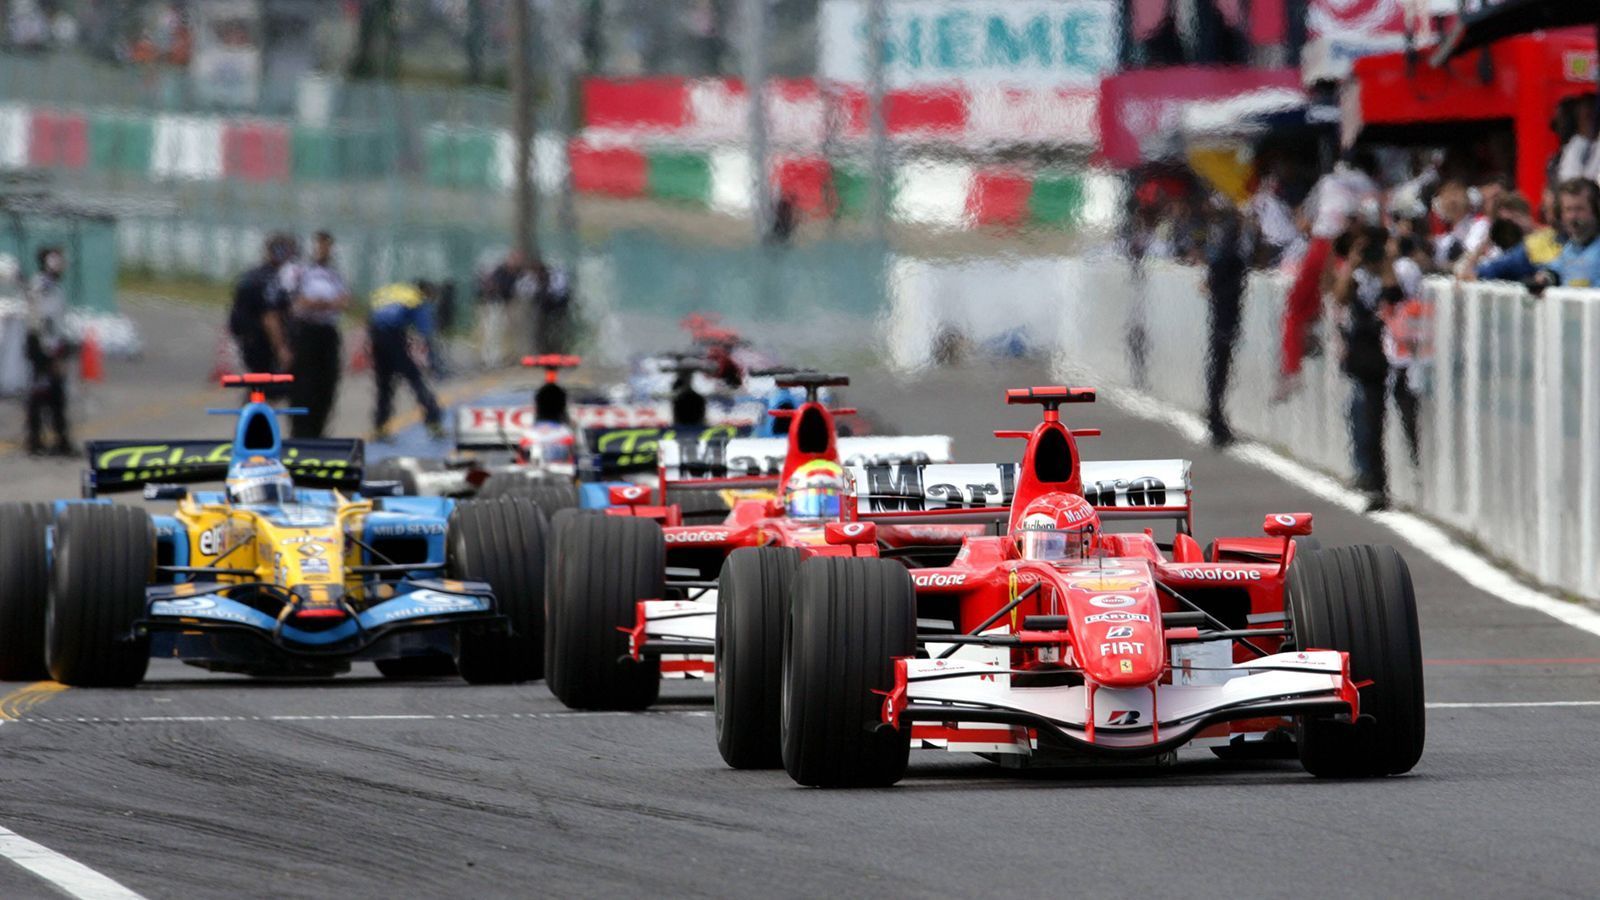 
                <strong>Meiste Runden in Führung</strong><br>
                Michael Schumacher: 5.111 (Platz 1) - Lewis Hamilton: 5.043 (Platz 2)
              